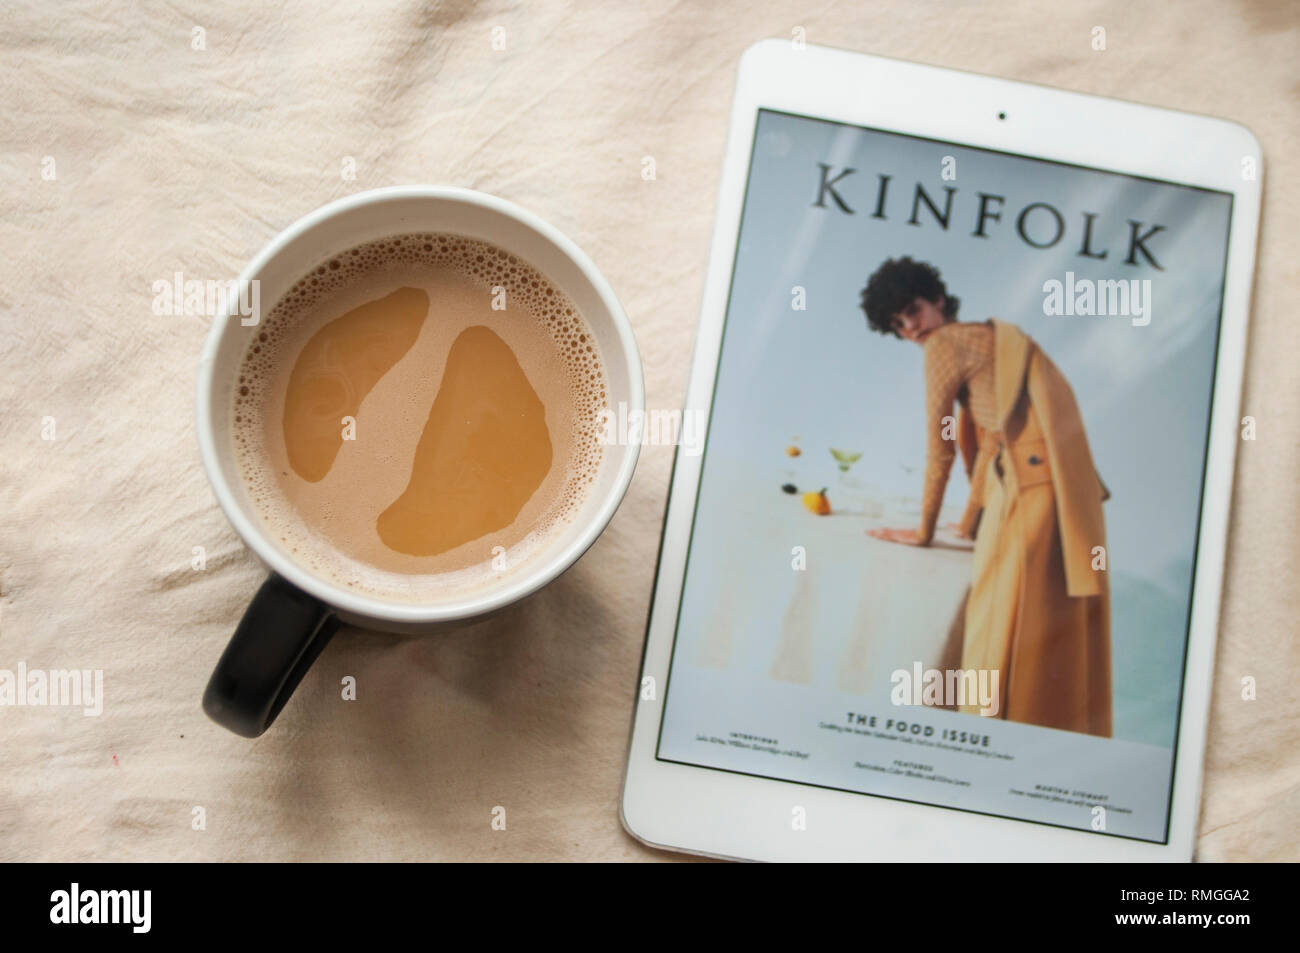 Morgendliche routine Konzept. Eine Tasse Kaffee und Tablet mit Kinfolk Magazin. Stockfoto